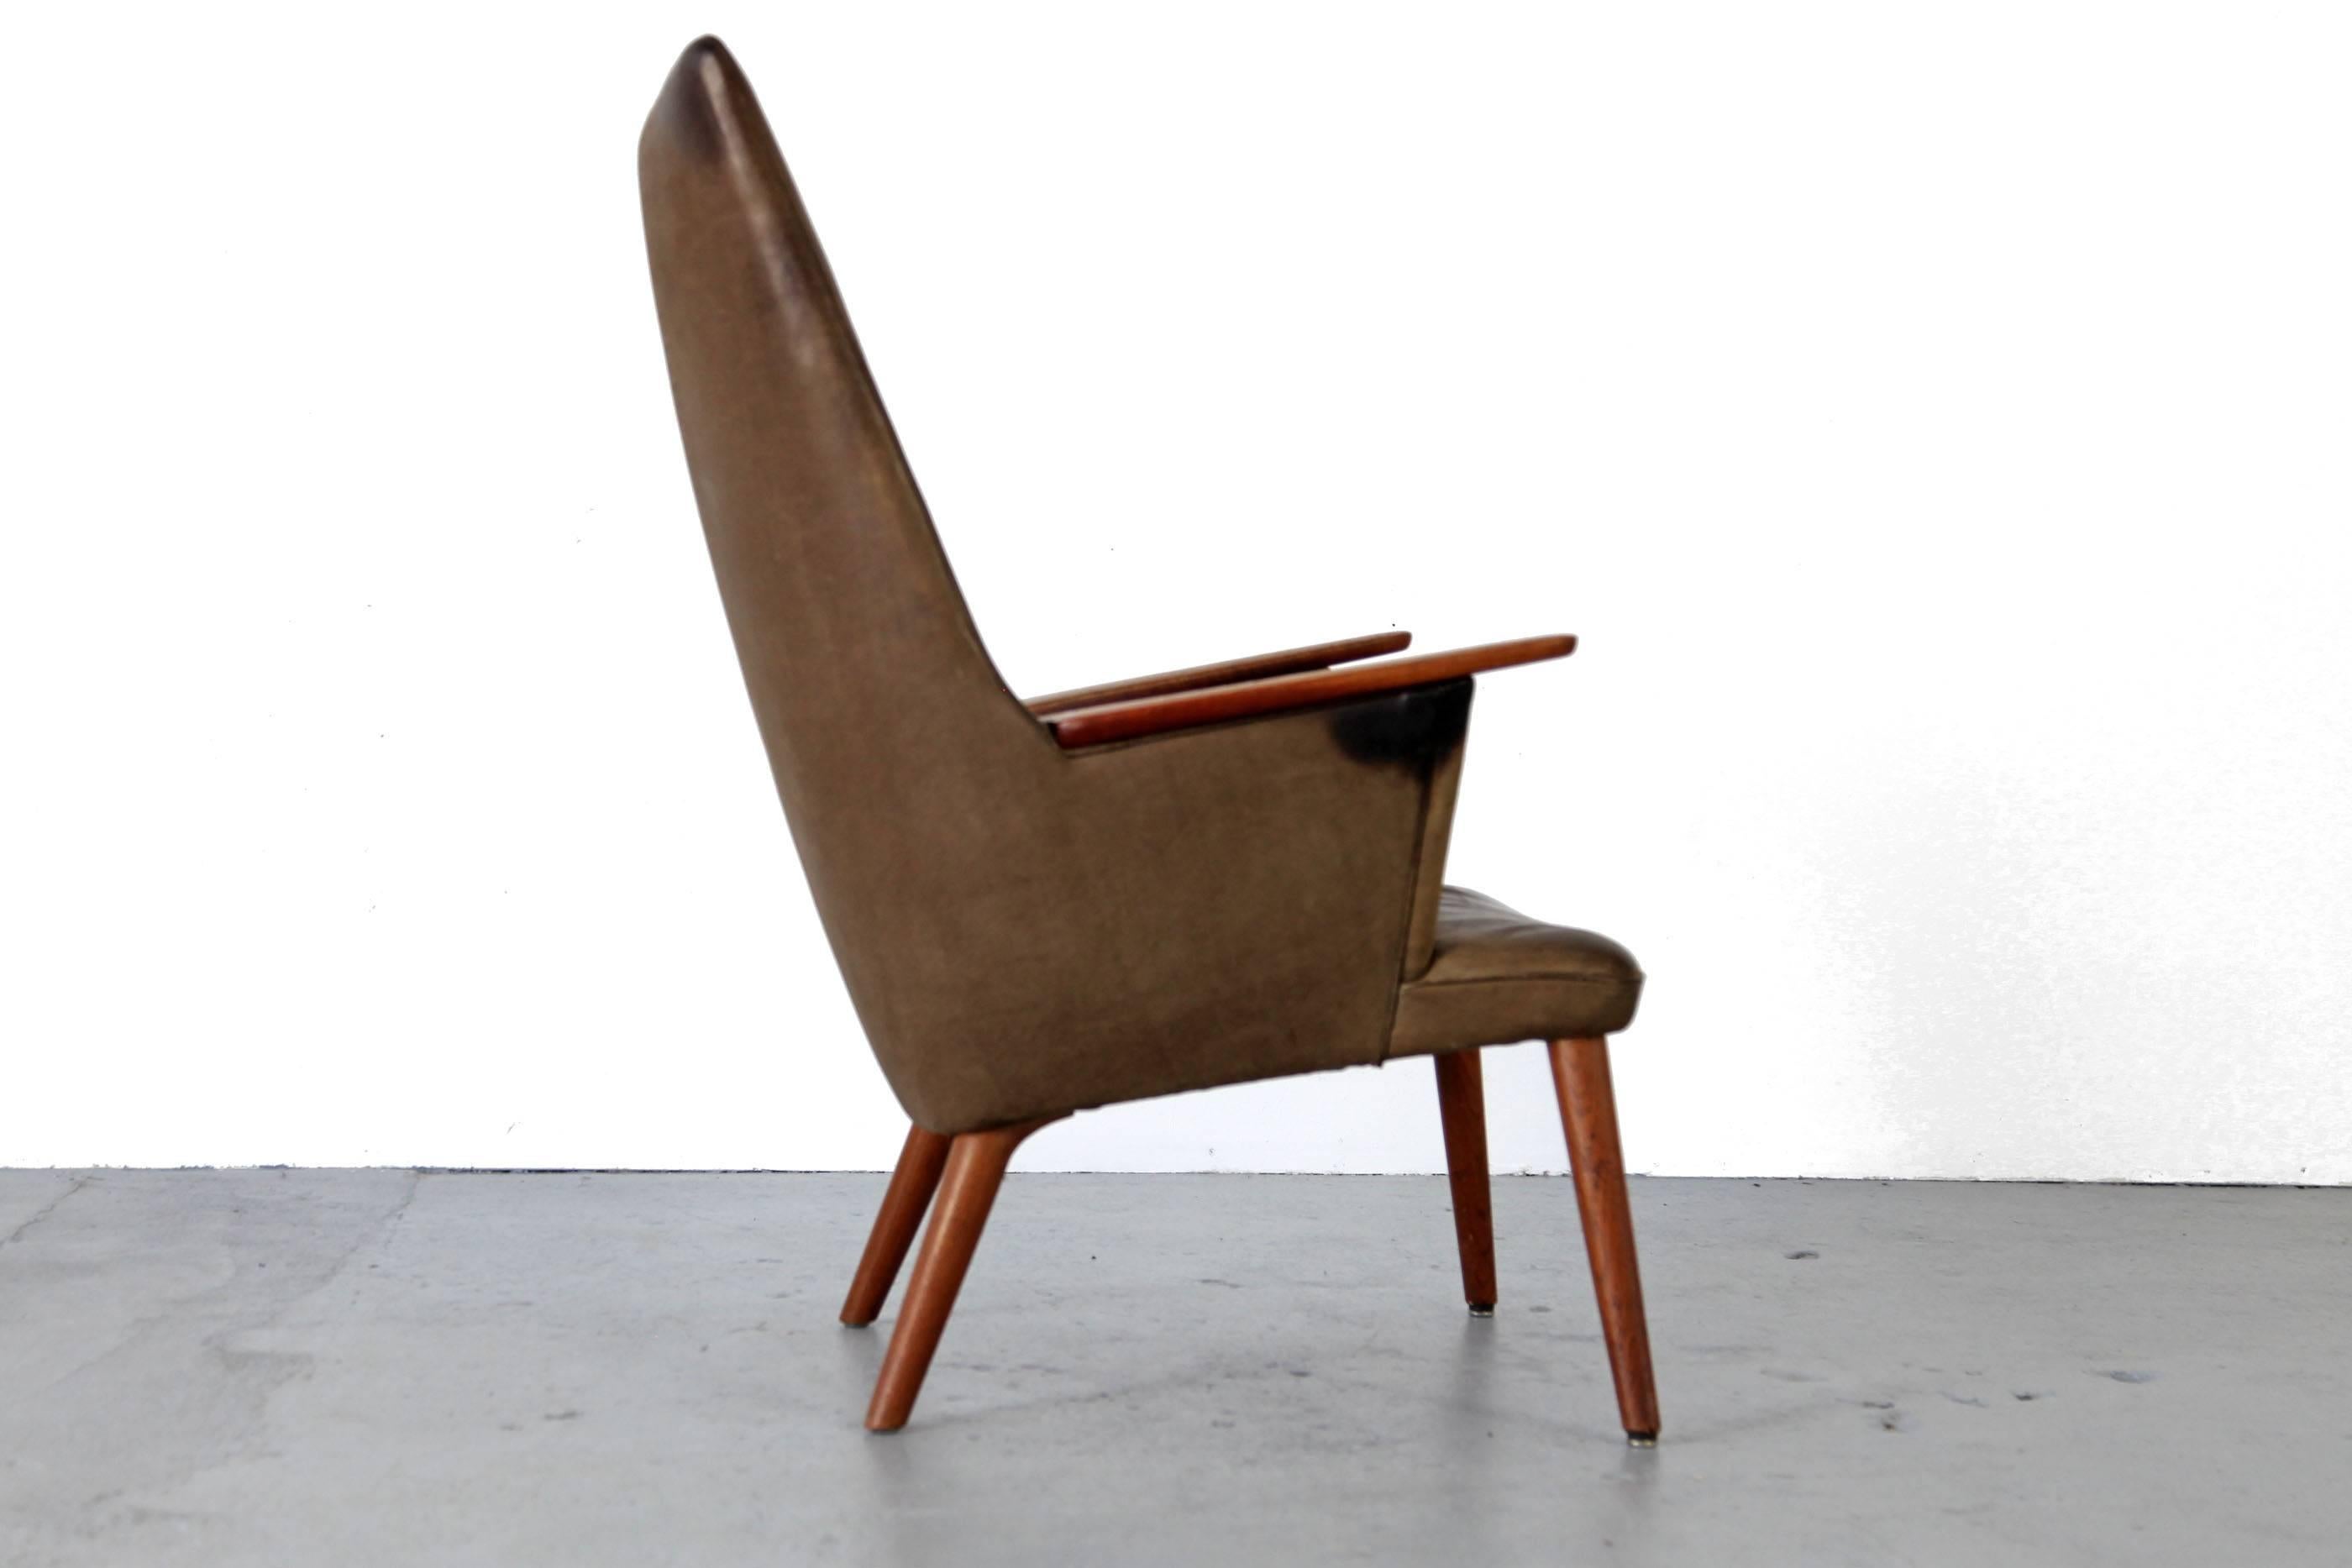 Scandinavian Modern Lounge Chair by Hans J. Wegner, Produced by A.P. Stolen